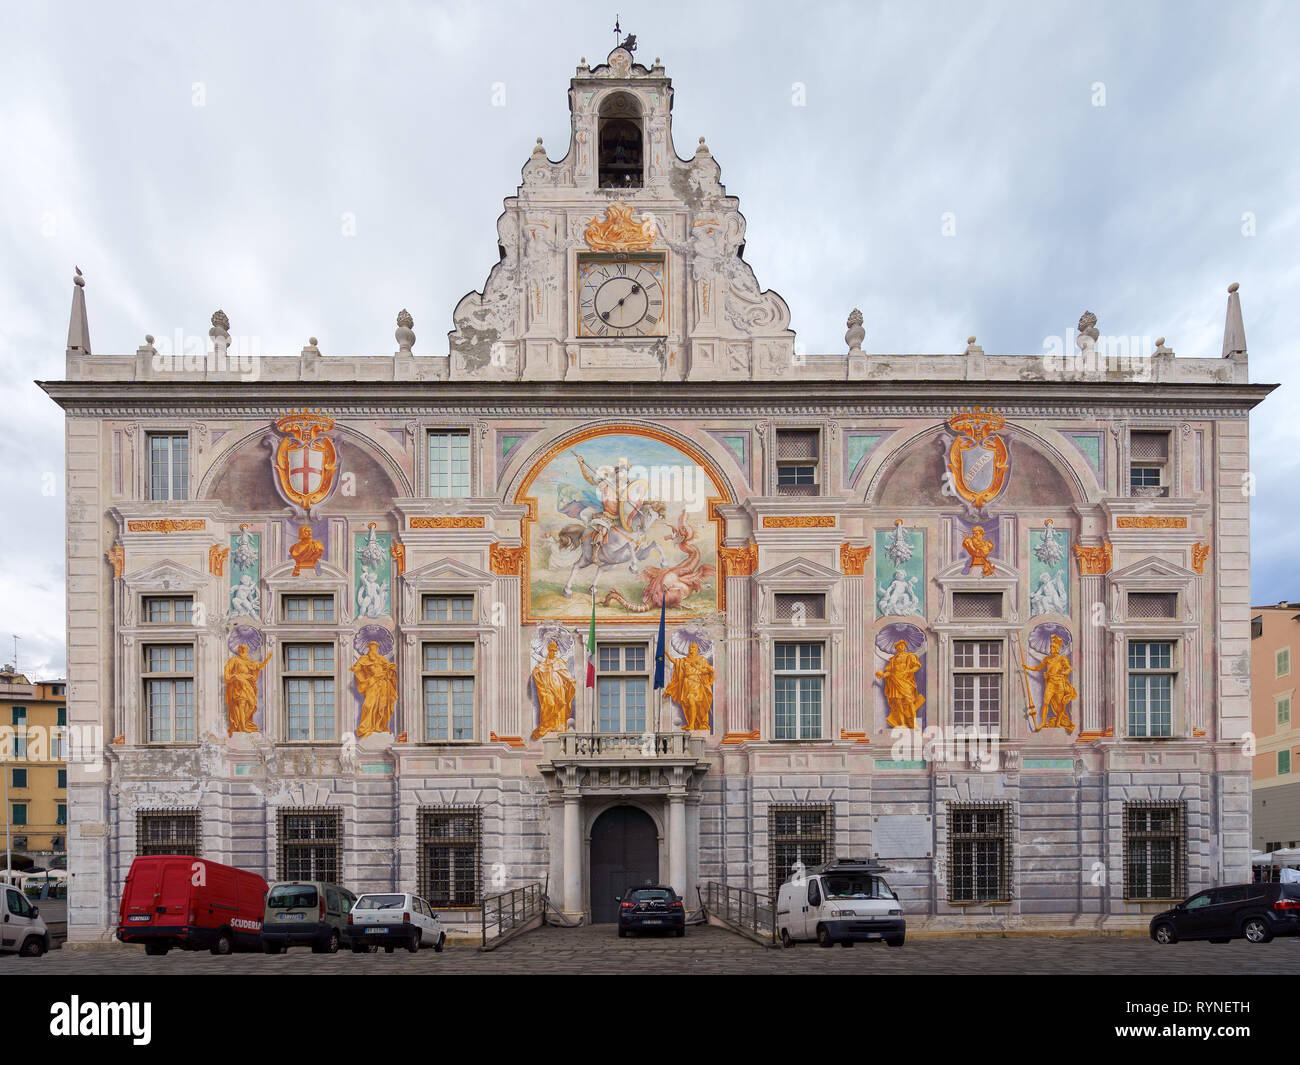 GENOA, ITALY - NOVEMBER 04, 2018 - Palazzo San Giorgio or Saint George Palace Stock Photo